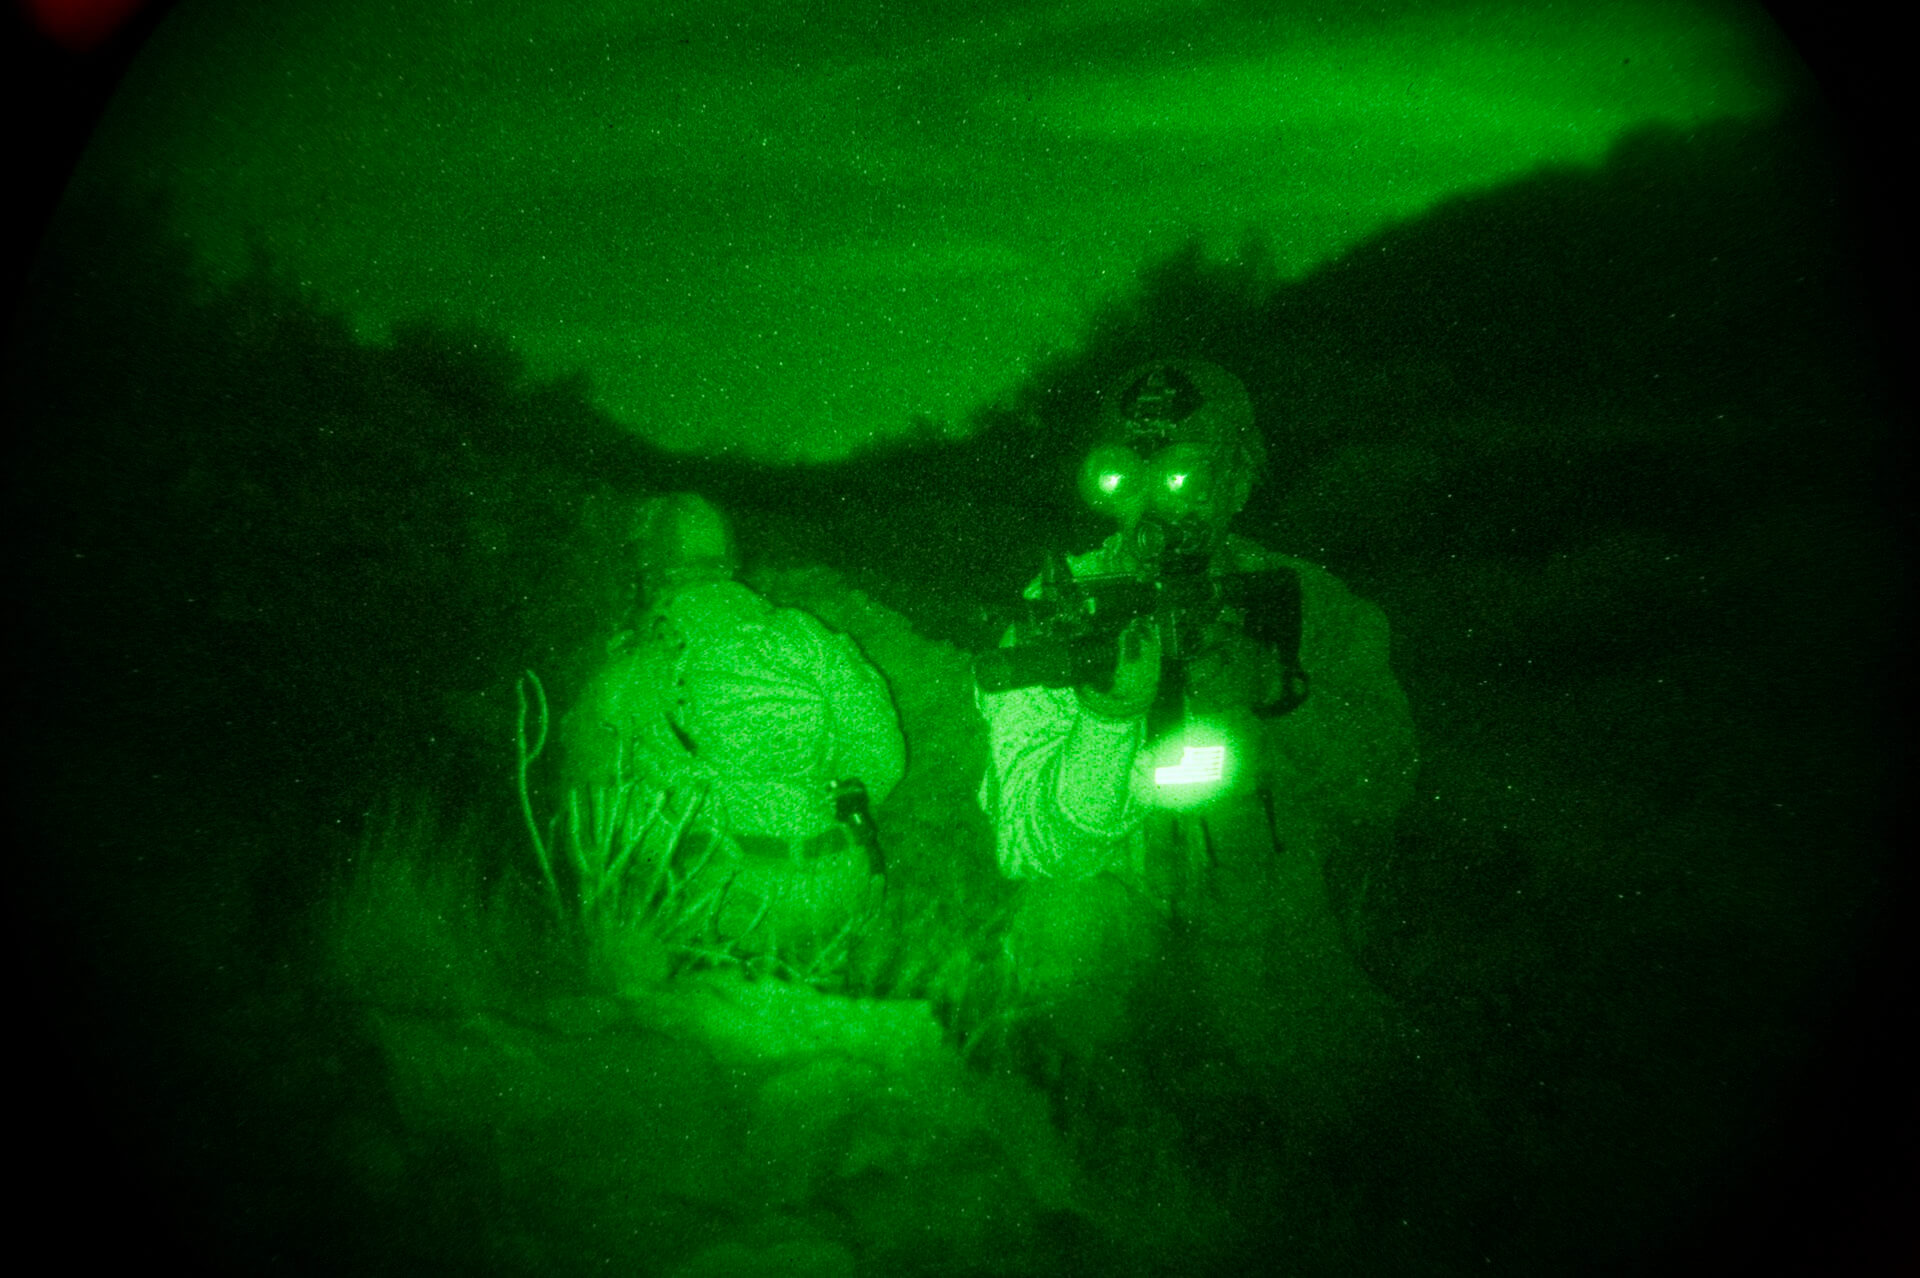 يستخدم جنود من وحدة أسد البحر التابعة للبحرية الأمريكية معدات الرؤية الليلية. الصورة تبدو خضراء. الصورة: من ويكيبيديا